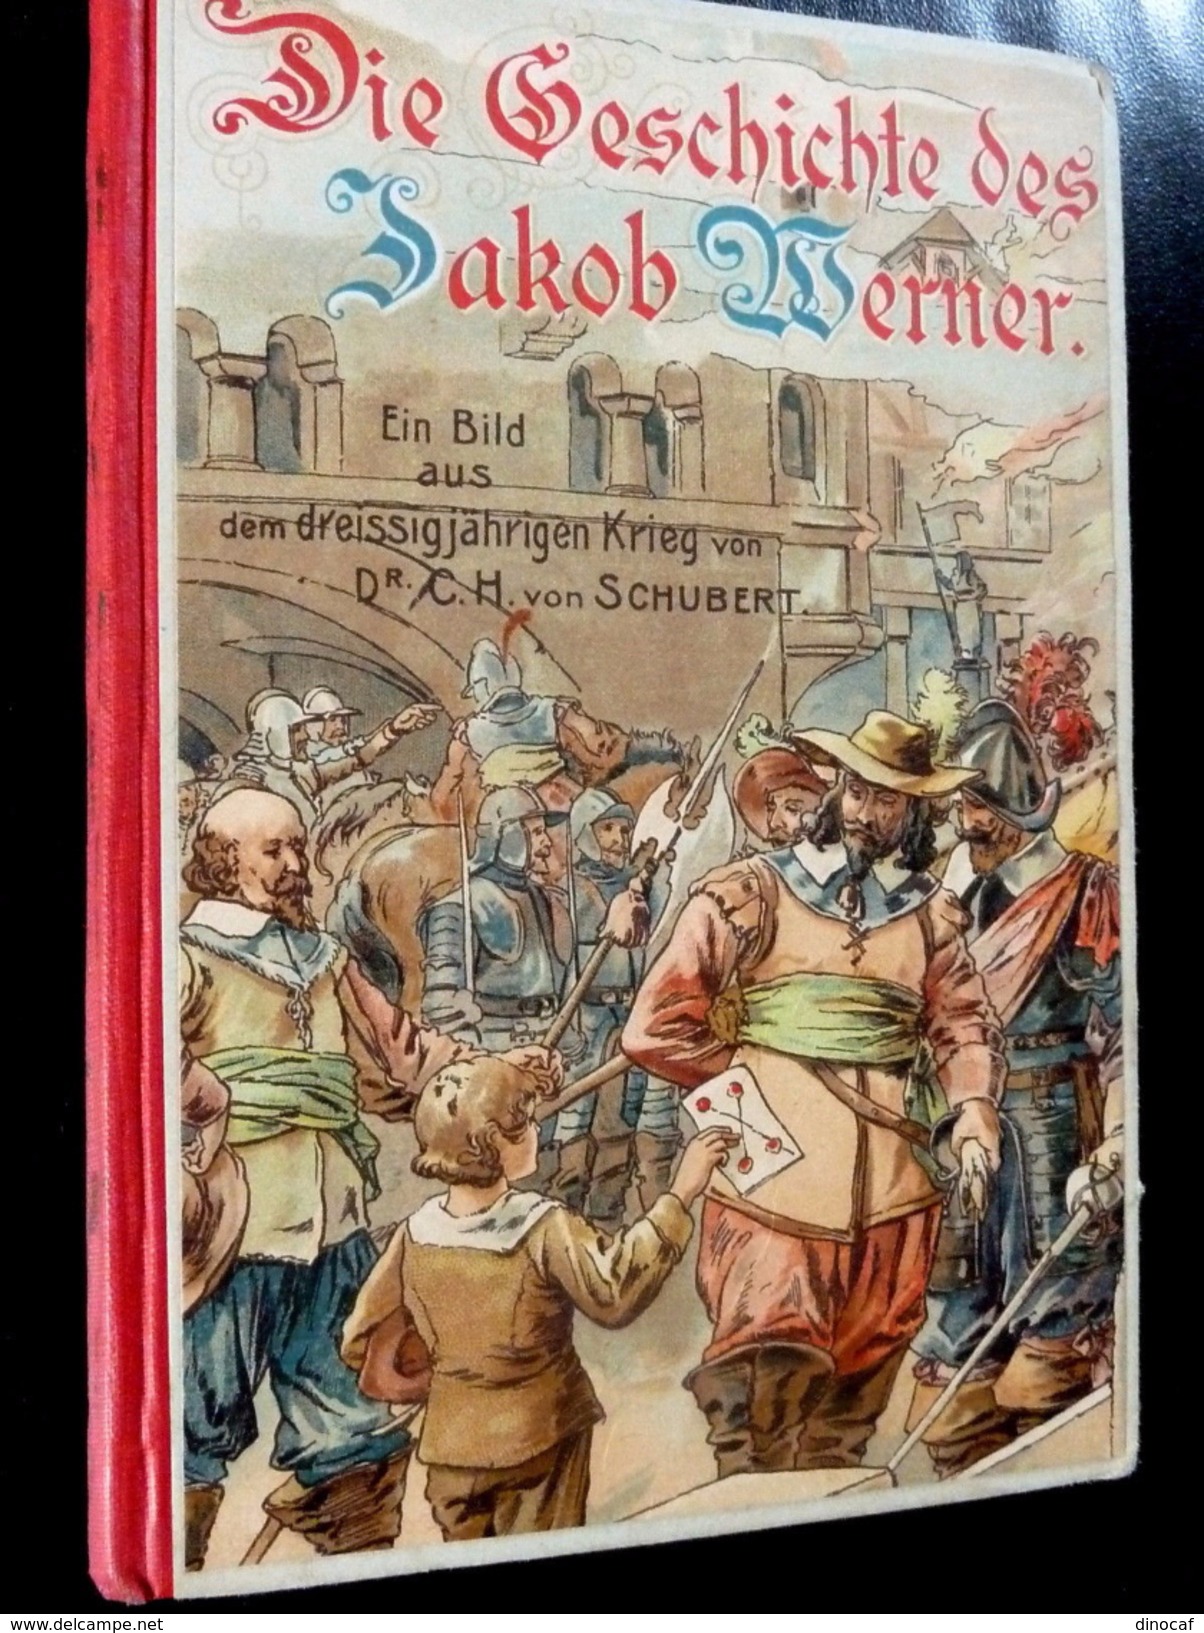 Schubert: Storia Del Jakob Werner Per 1900 Rares Originale Dell'epoca! - Libri Vecchi E Da Collezione